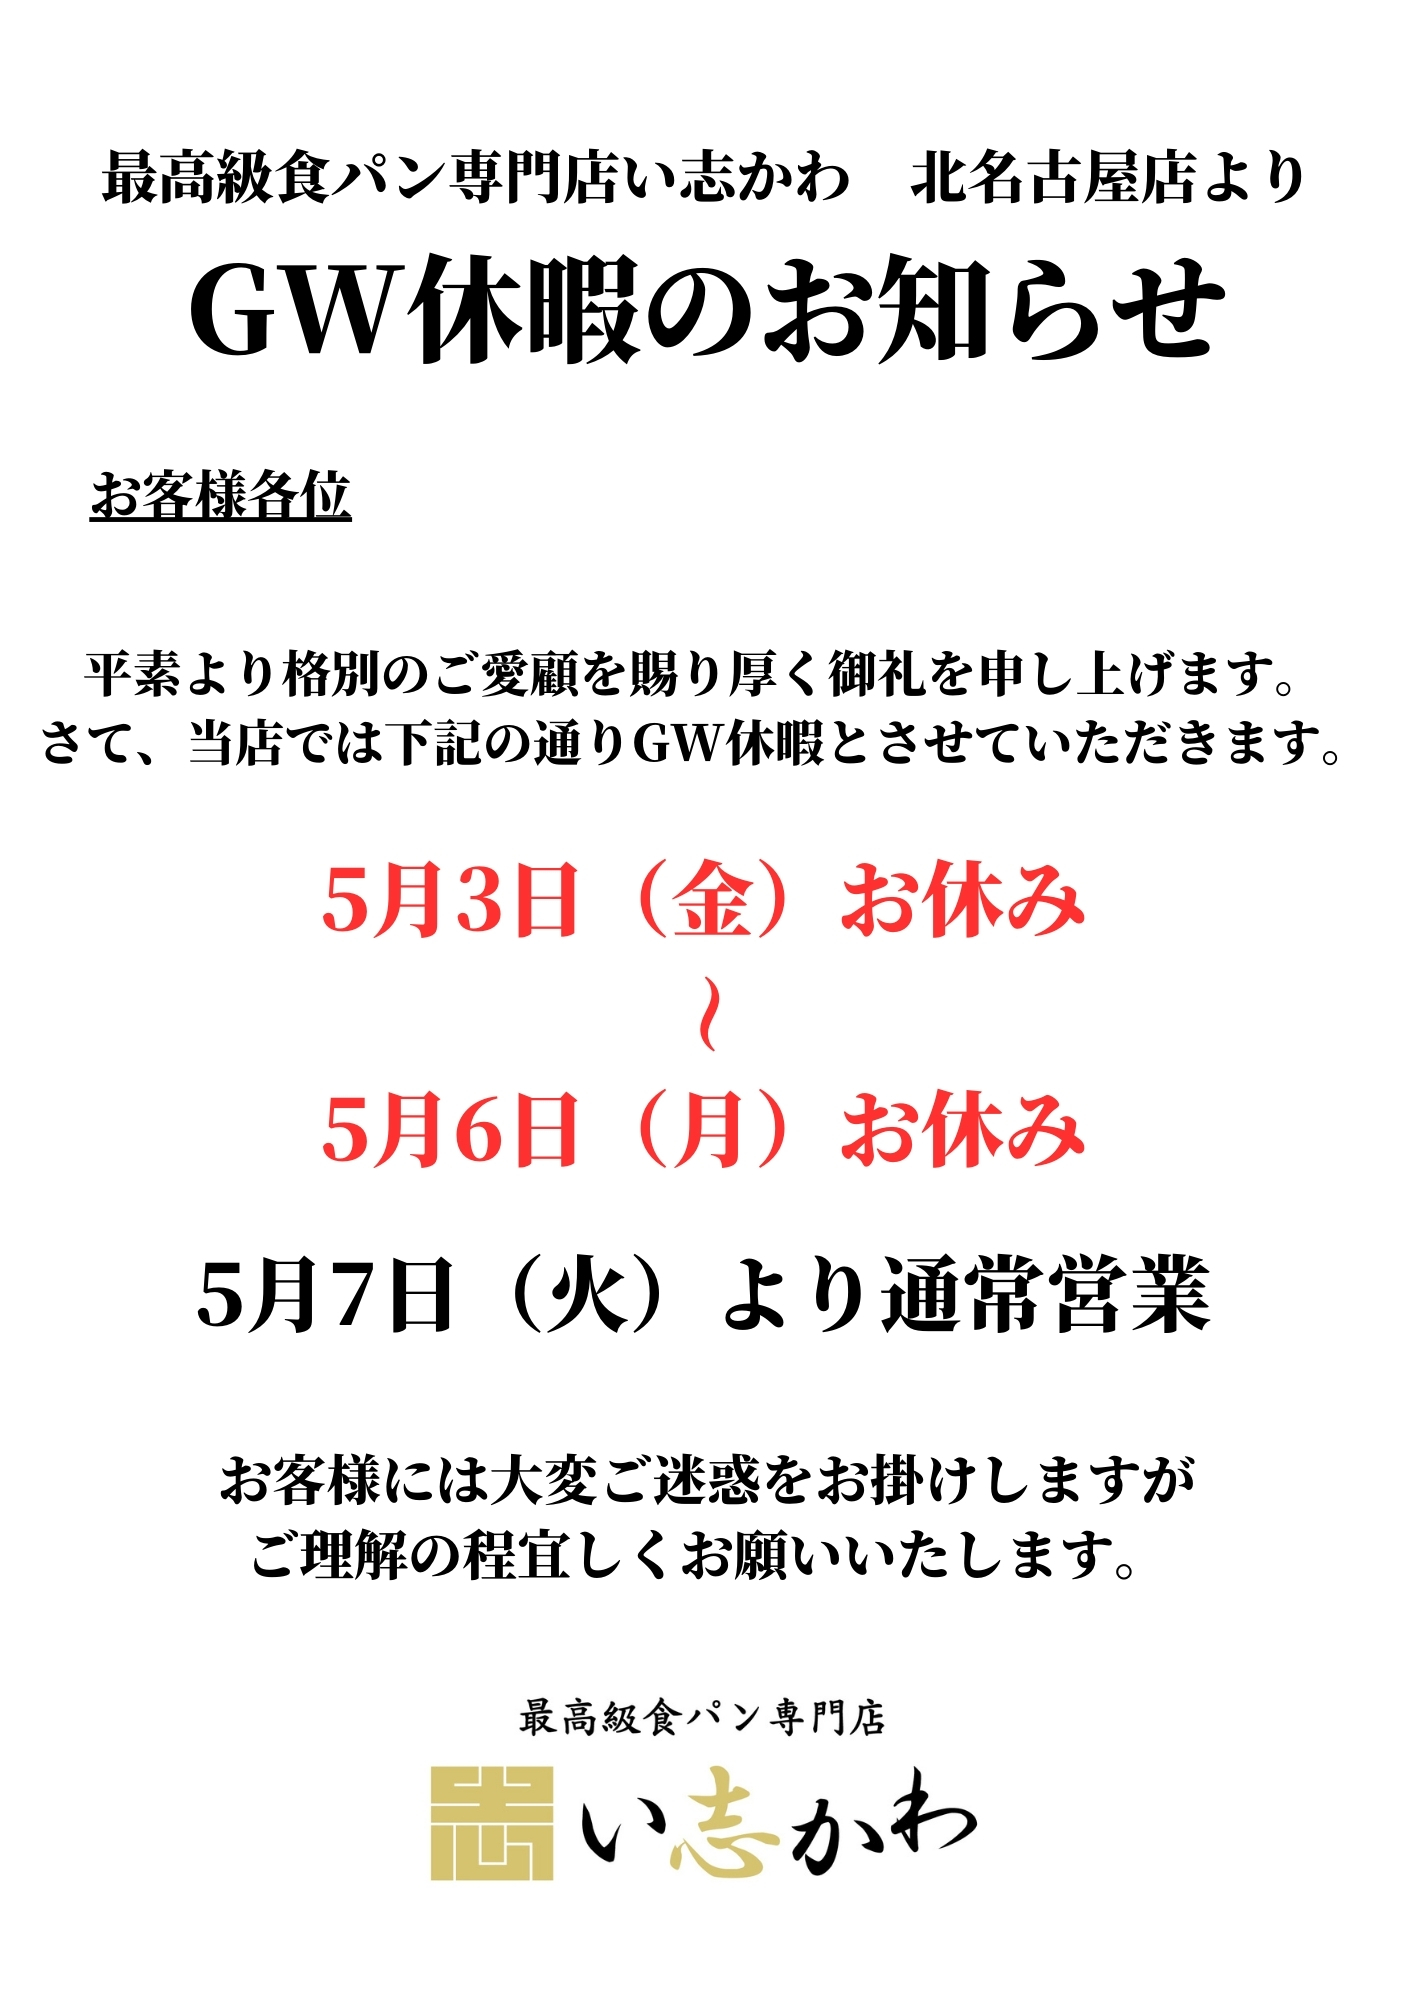 【北名古屋店】GW休暇のお知らせ